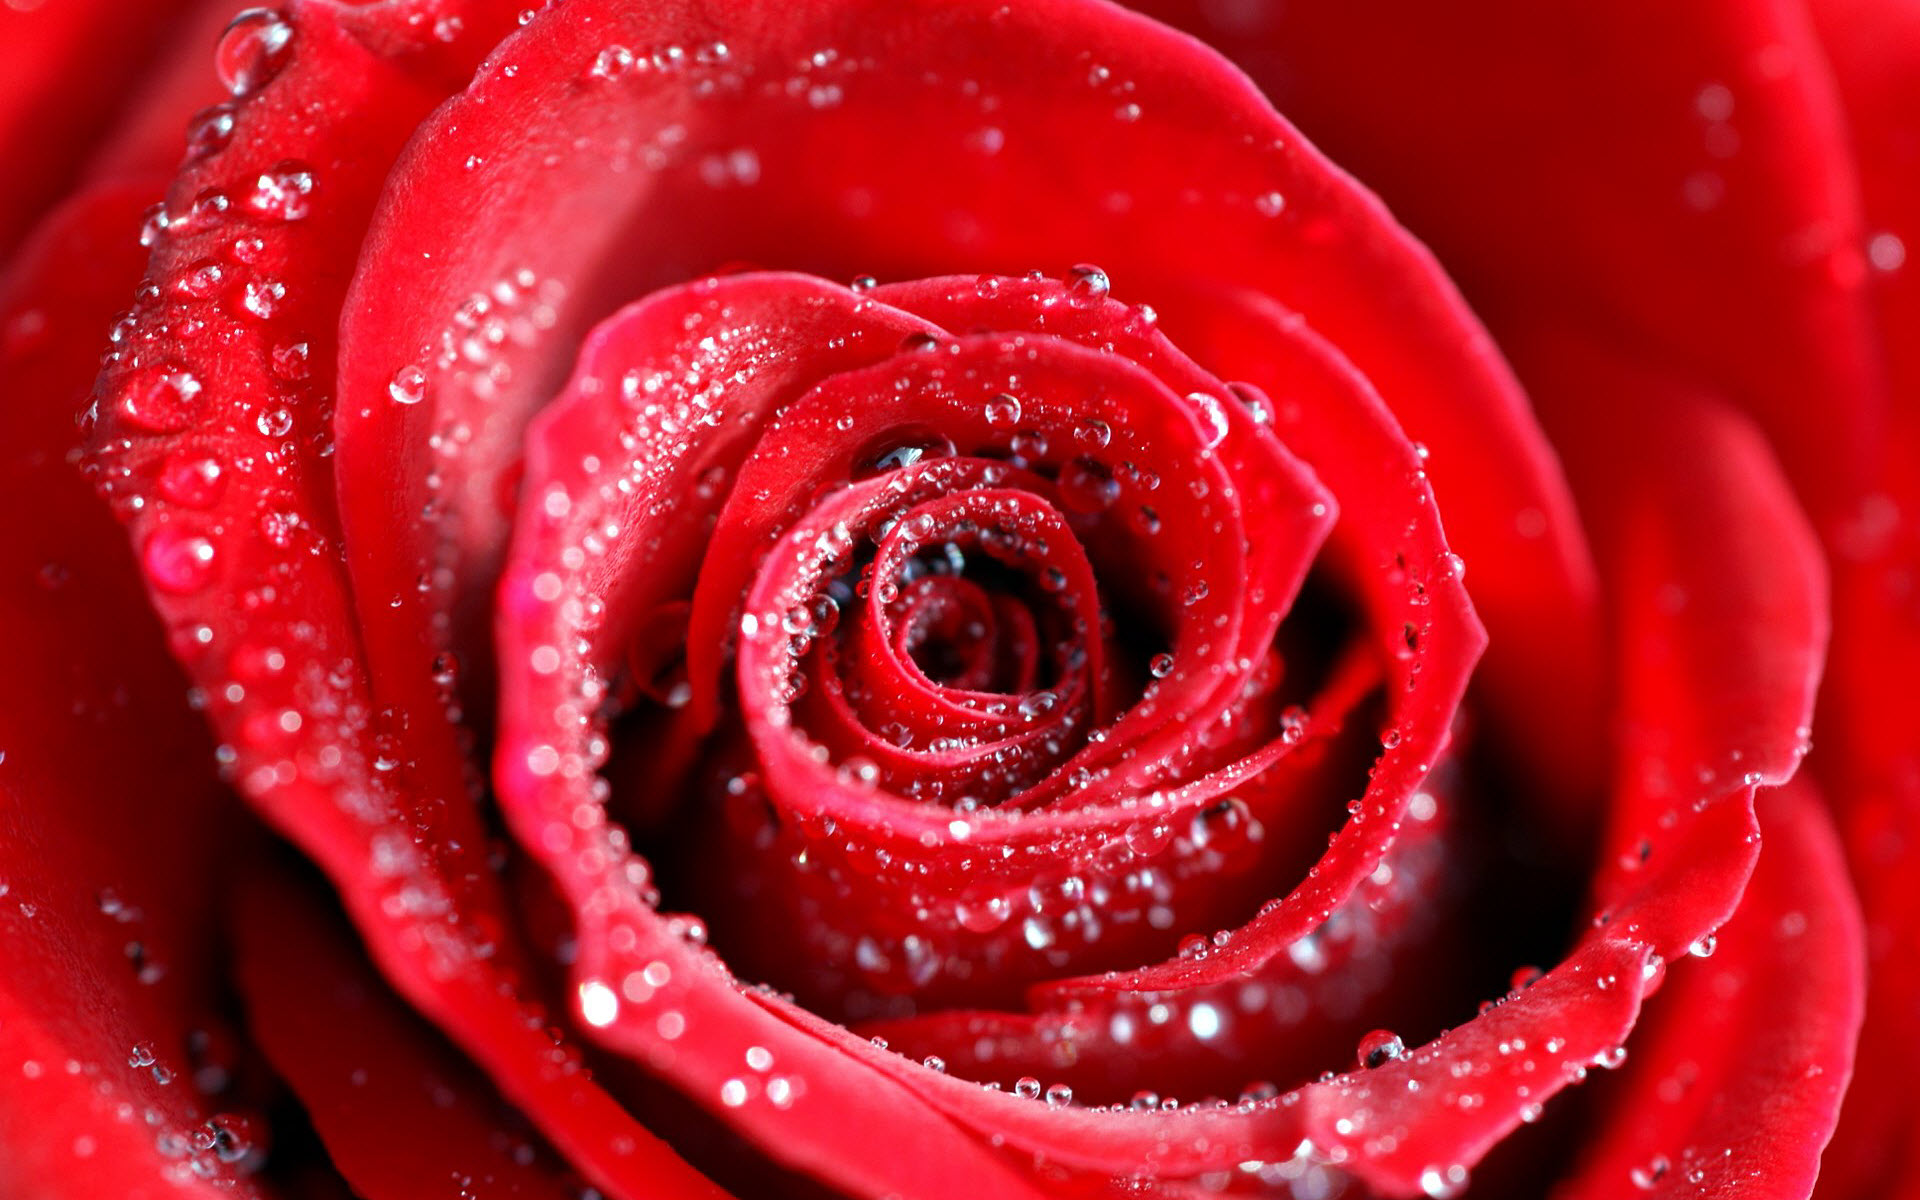 Water Drops on Red Rose6274411065 - Water Drops on Red Rose - Water, Roses, Rose, Drops